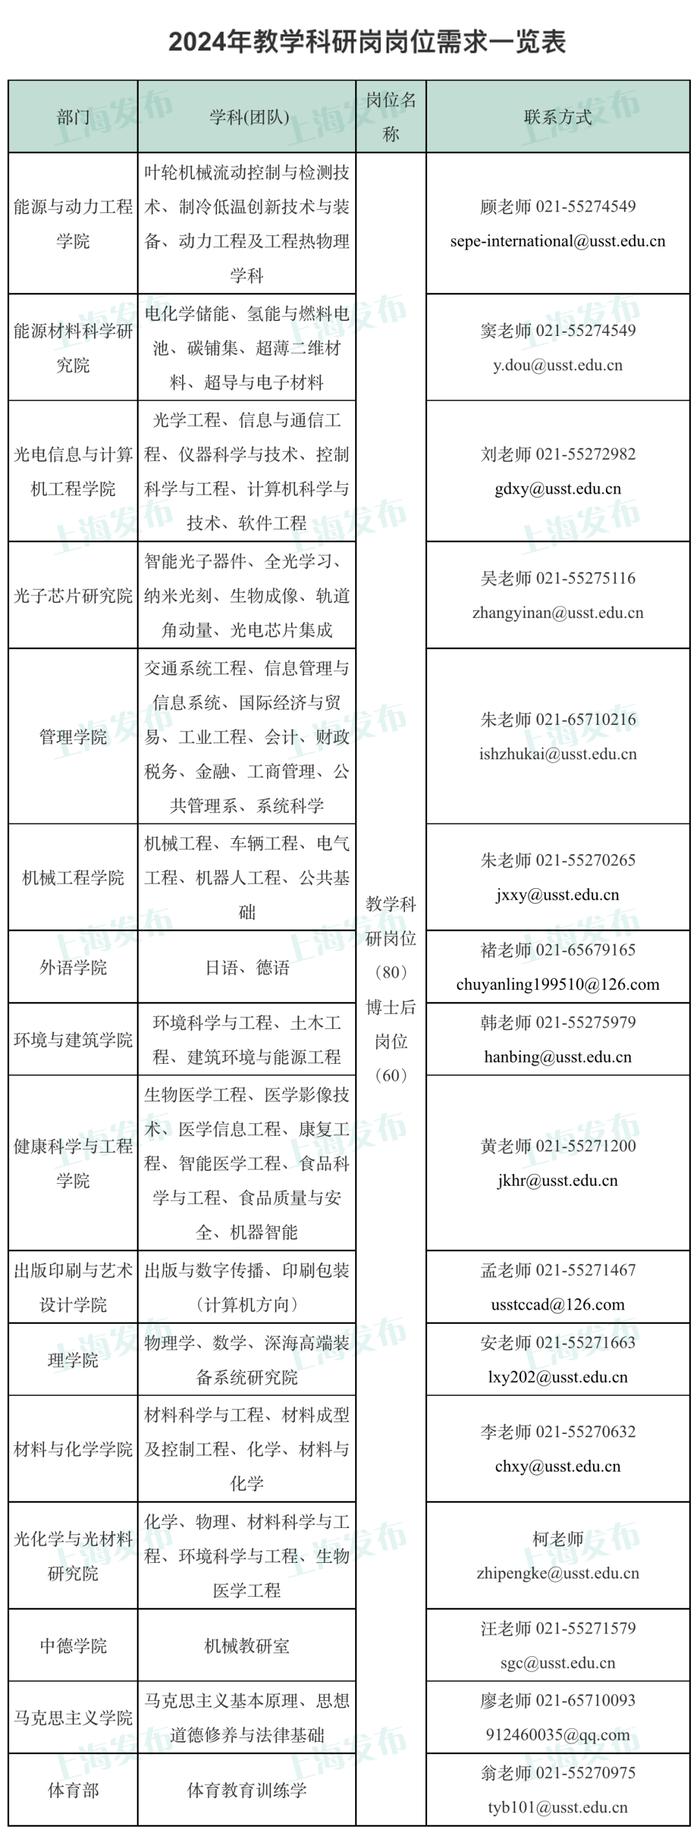 【就业】上海理工大学启动2024年公开招聘，计划招聘岗位140个